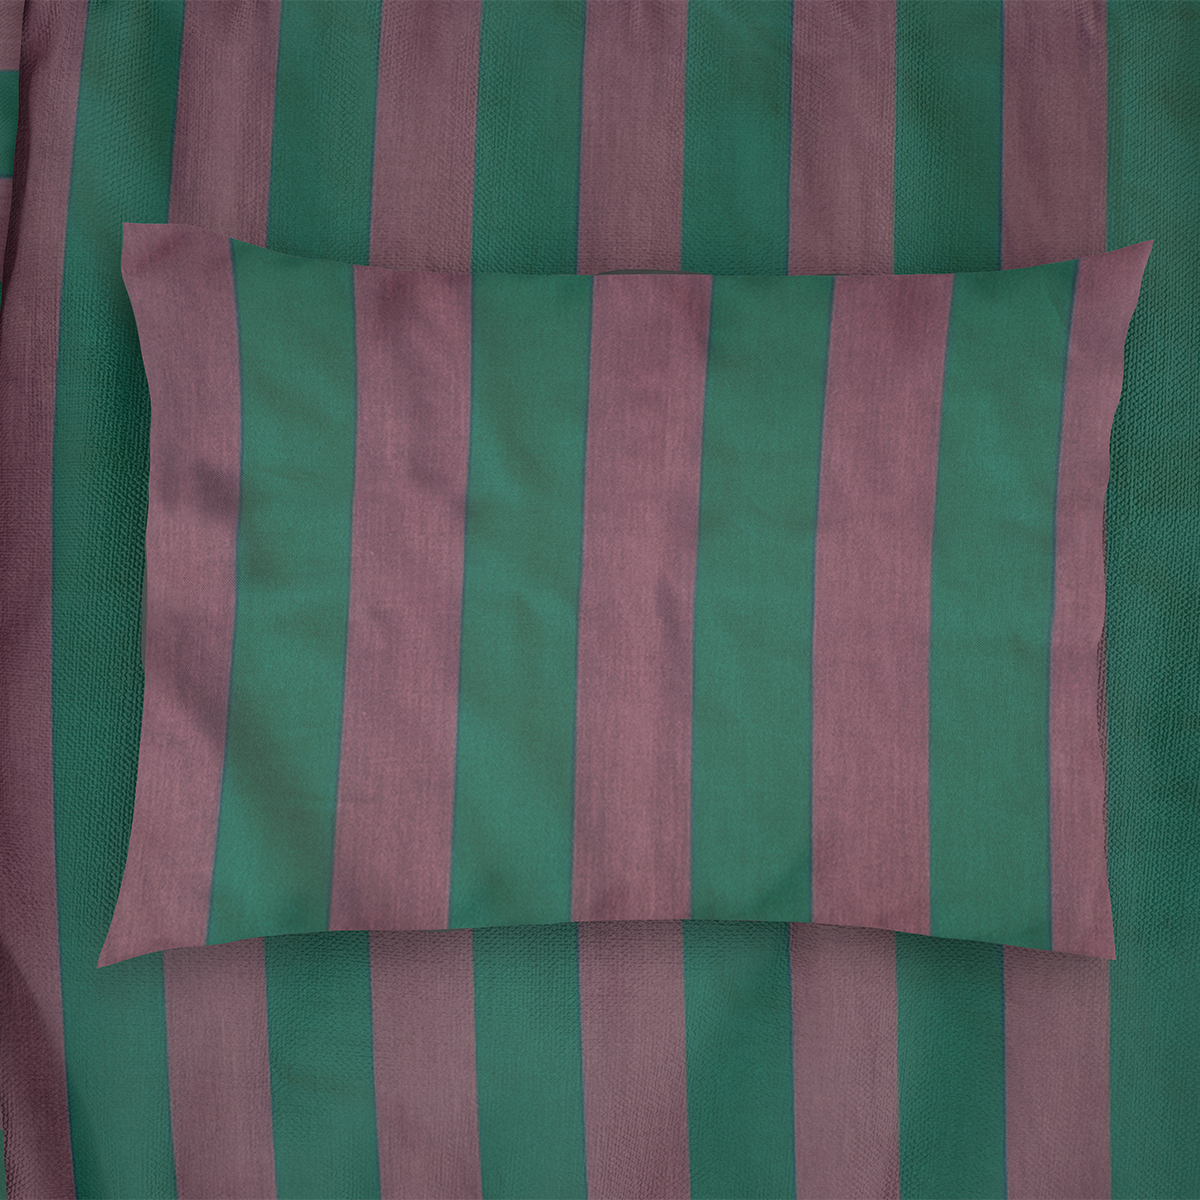 Μαξιλαροθήκη (50×70) Dimcol Stripes 156 Green/Antique